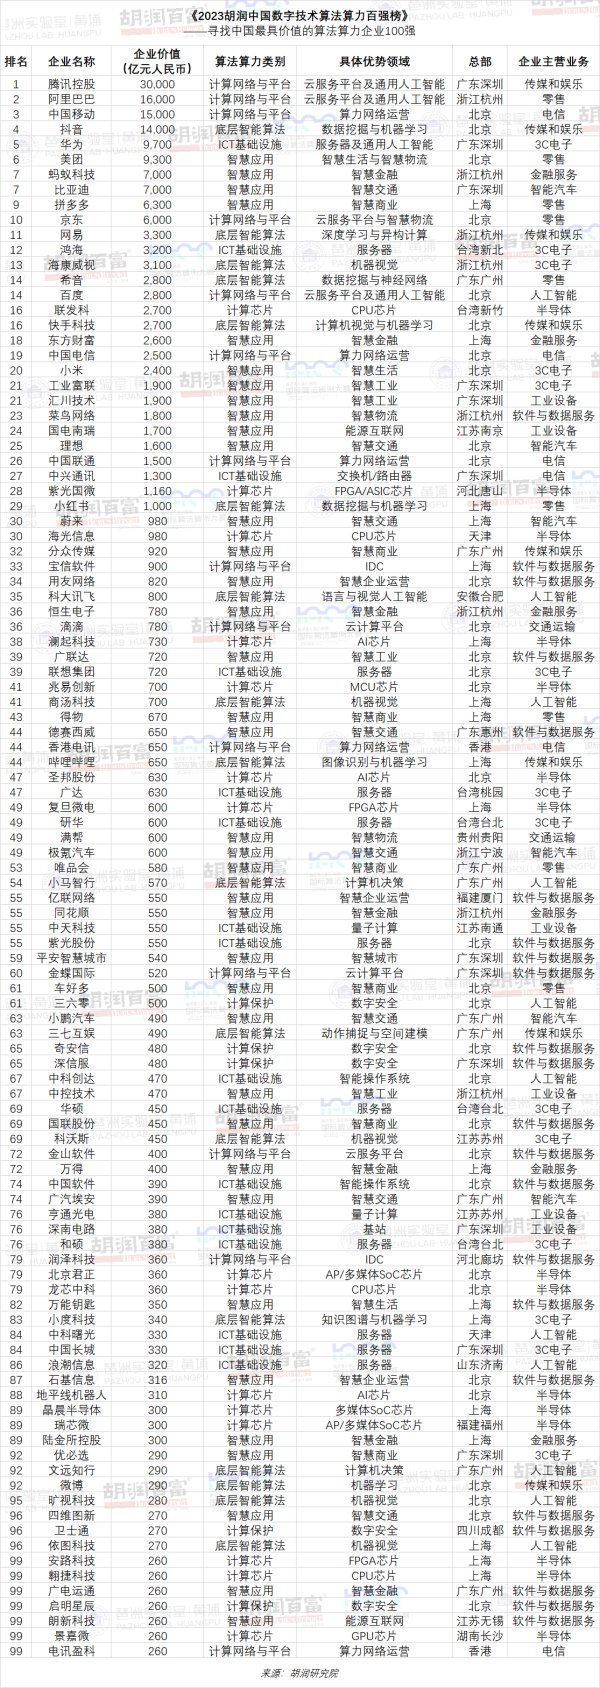 腾讯夺冠 华为第五 中国数字技术算法算力百强榜发布